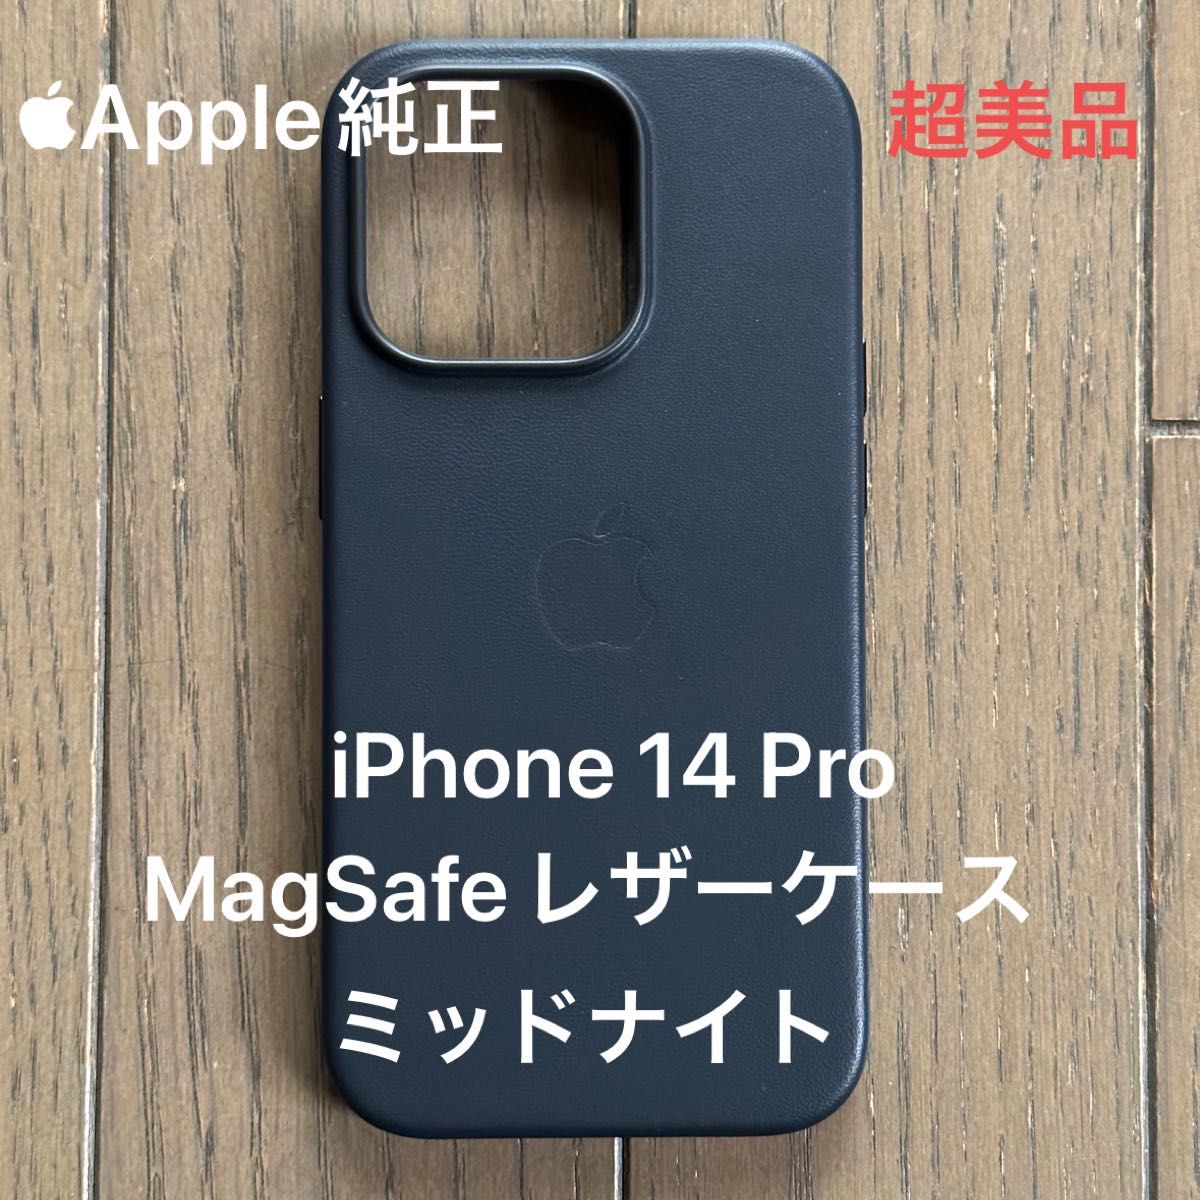 Apple純正 iPhone 14 Pro レザーケース ミッドナイト MagSafe対応 超美品